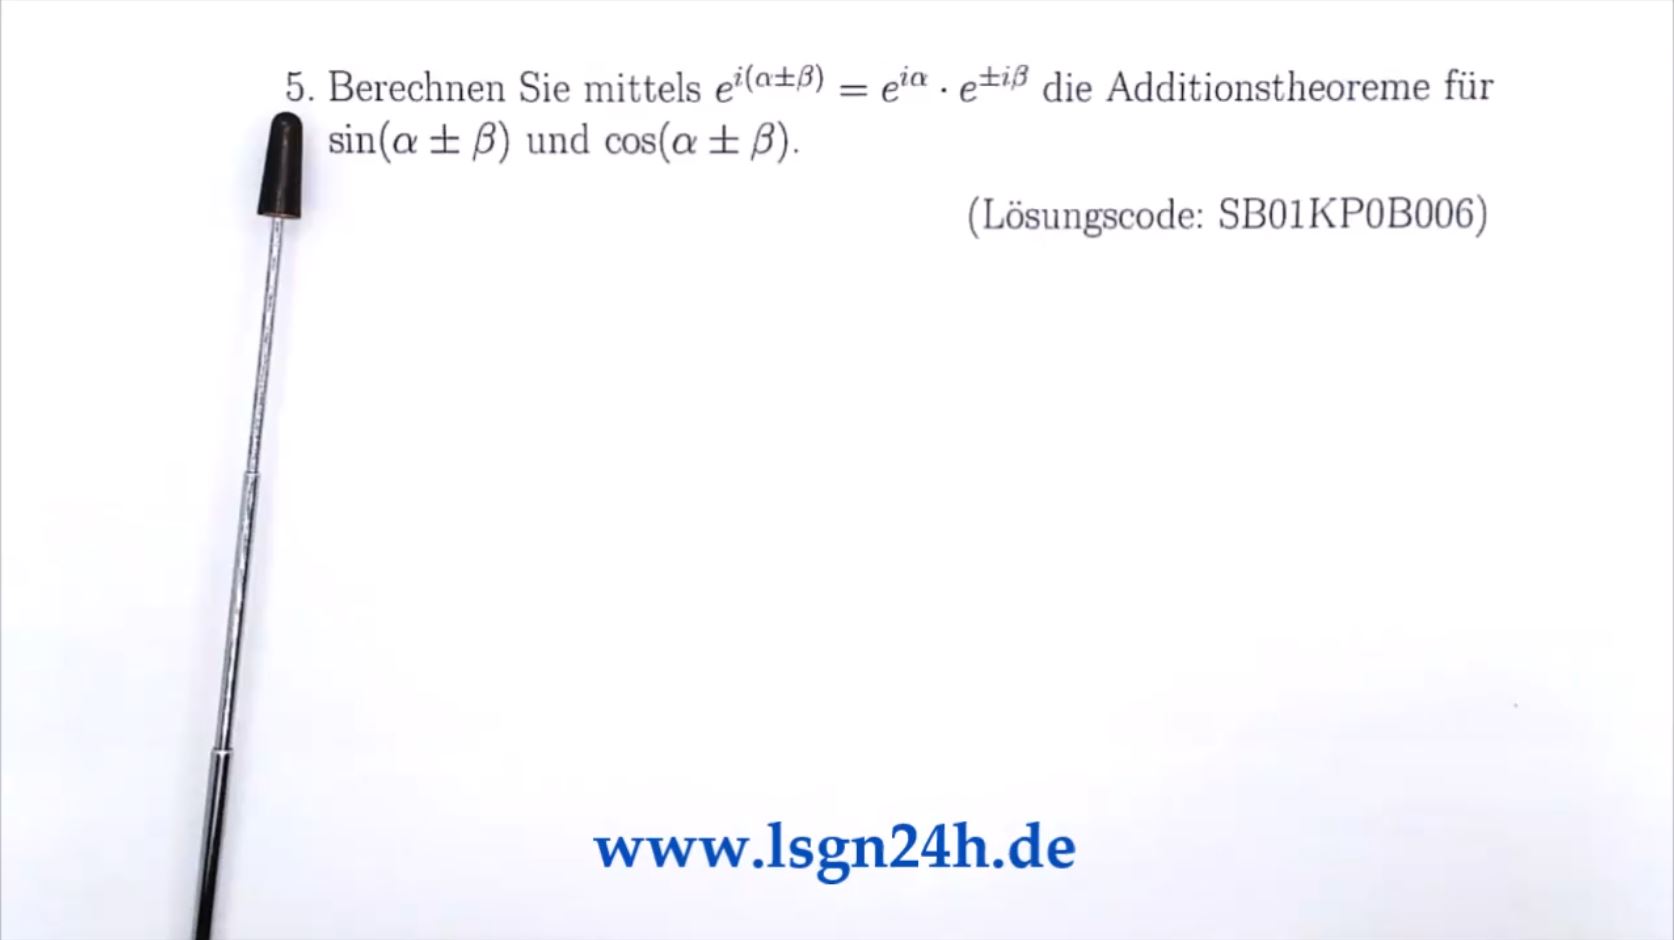 Woher kommen die Additionstheoreme für $\sin$ und $\cos$?